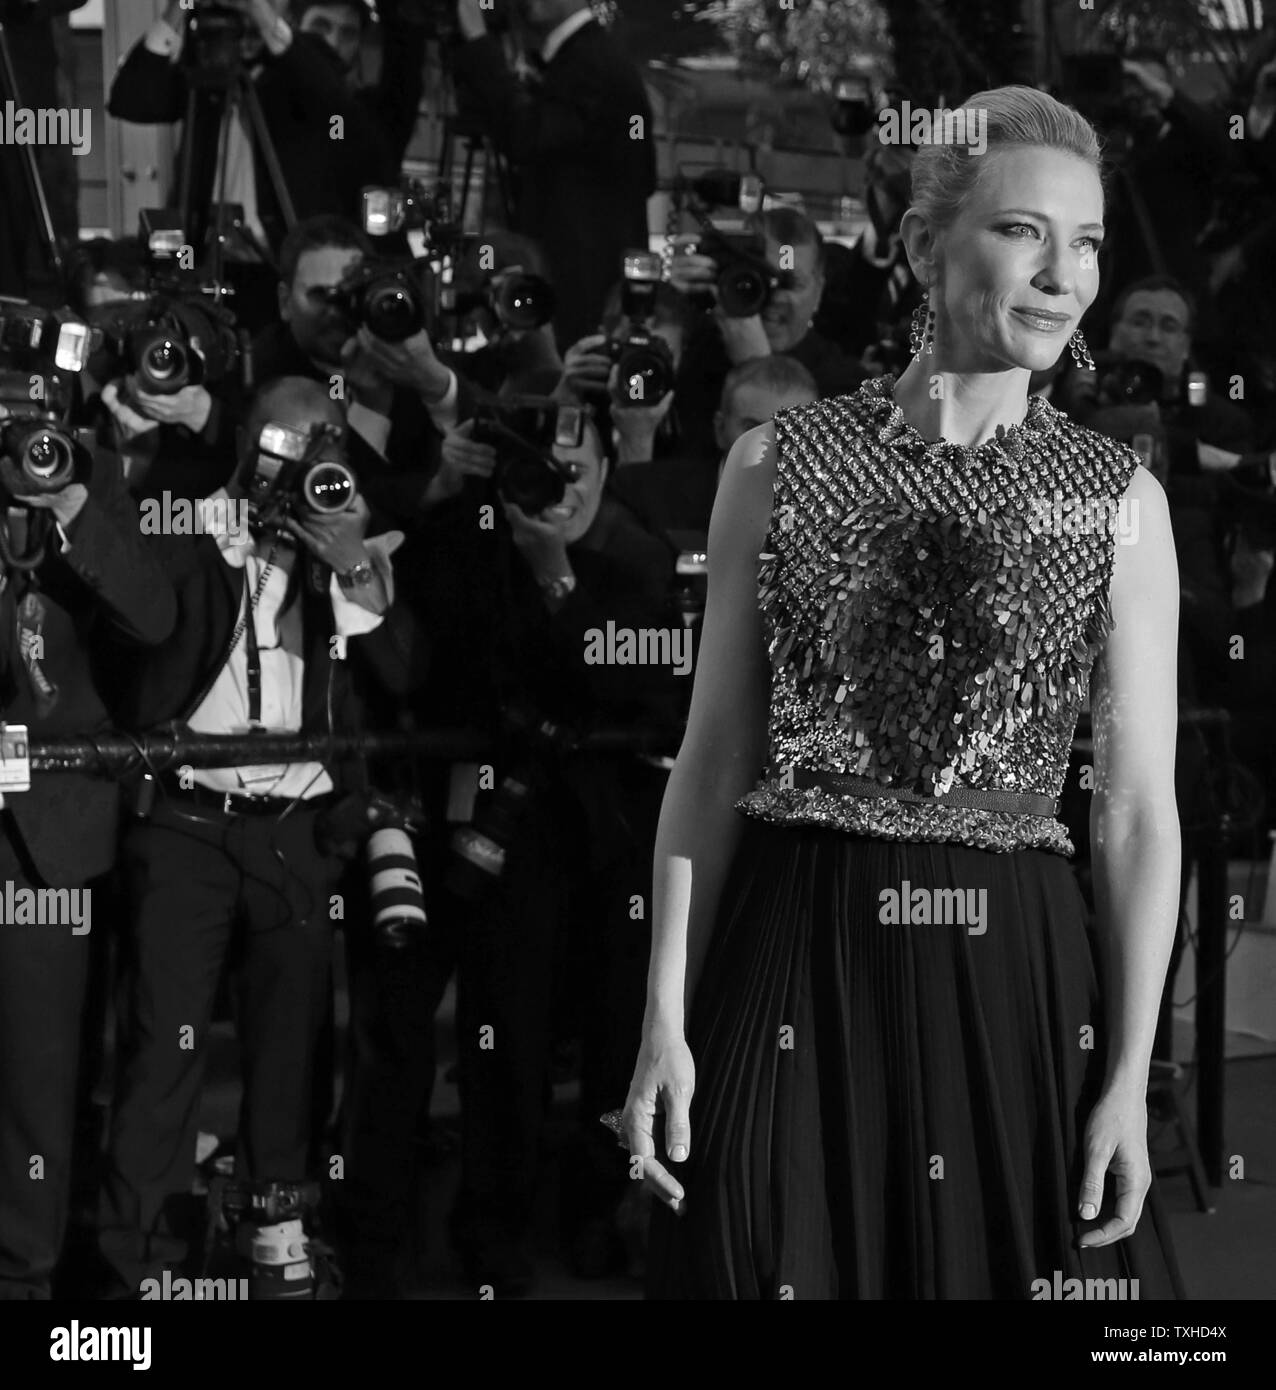 Cate Blanchett llega a la alfombra roja antes de la proyección de la película 'Cómo entrenar a tu dragón 2' durante el 67º Festival Internacional de Cine de Cannes anual en Cannes, Francia, el 16 de mayo de 2014. UPI/David Silpa Foto de stock